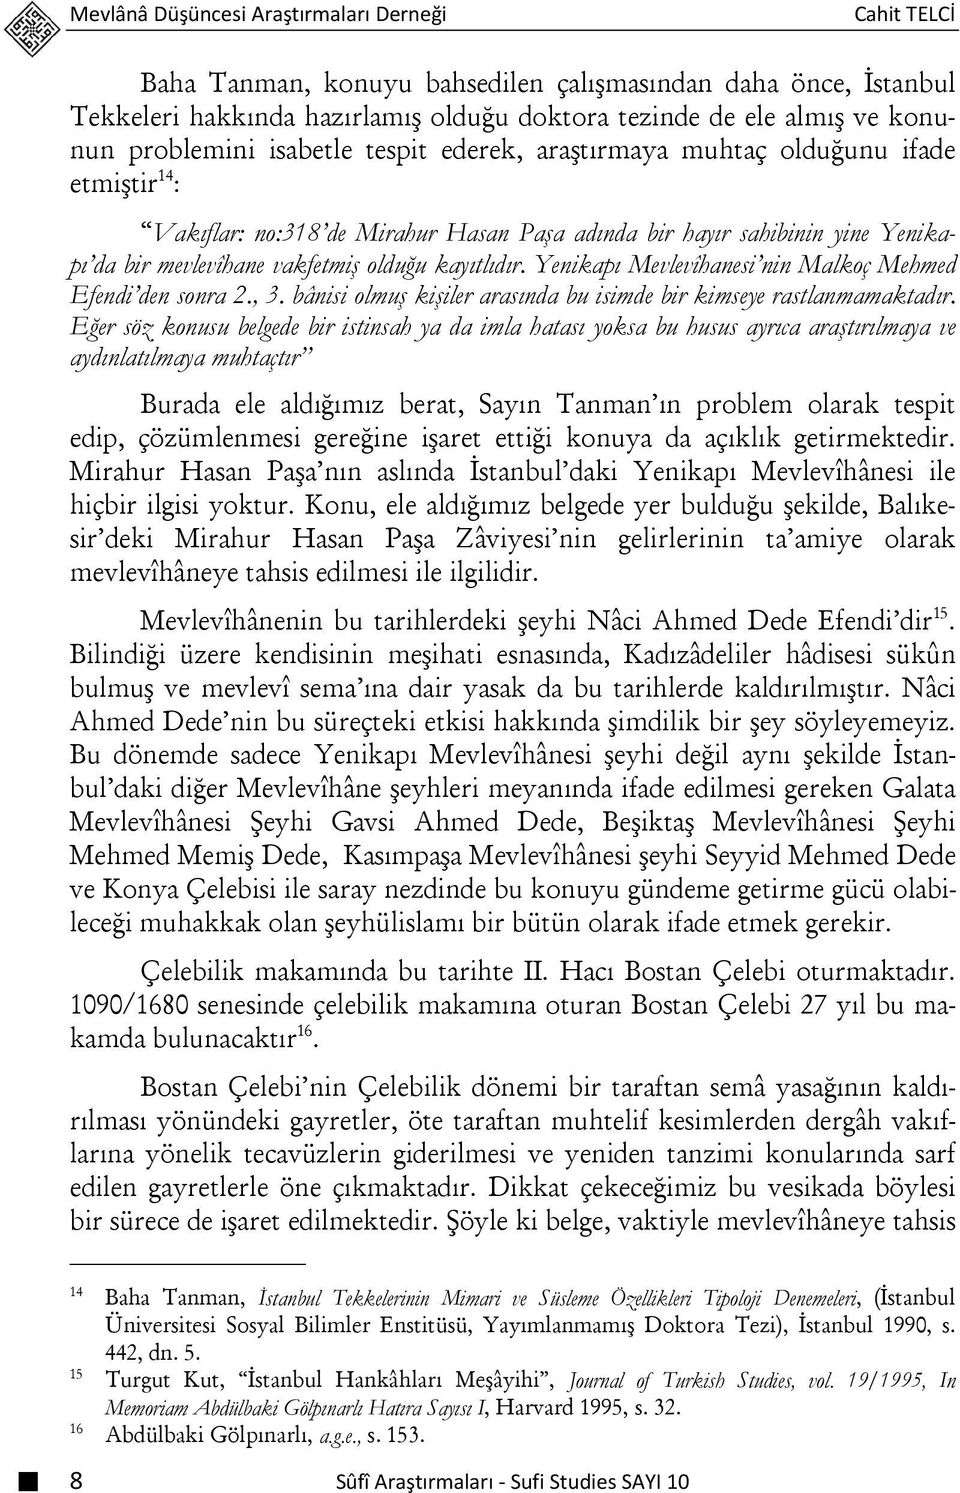 kayıtlıdır. Yenikapı Mevlevîhanesi nin Malkoç Mehmed Efendi den sonra 2., 3. bânisi olmuş kişiler arasında bu isimde bir kimseye rastlanmamaktadır.